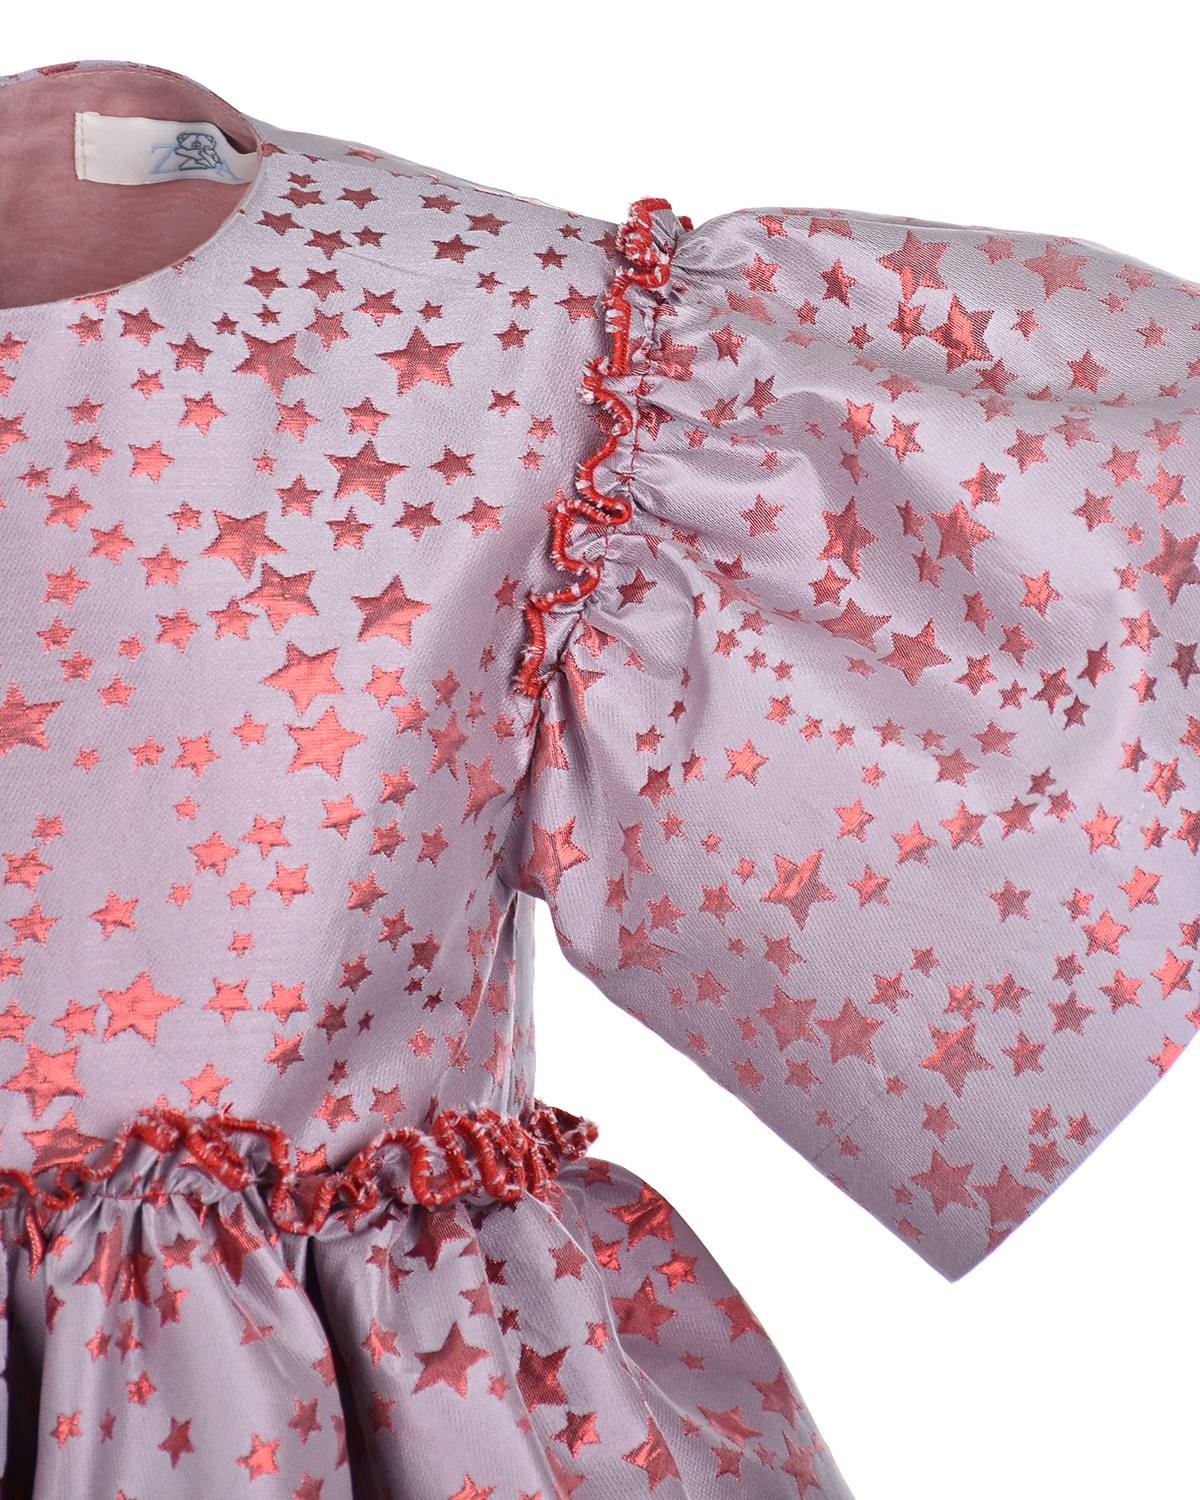 Жаккардовое платье с декором в форме звездочек Zhanna&Anna, размер 104, цвет розовый - фото 4